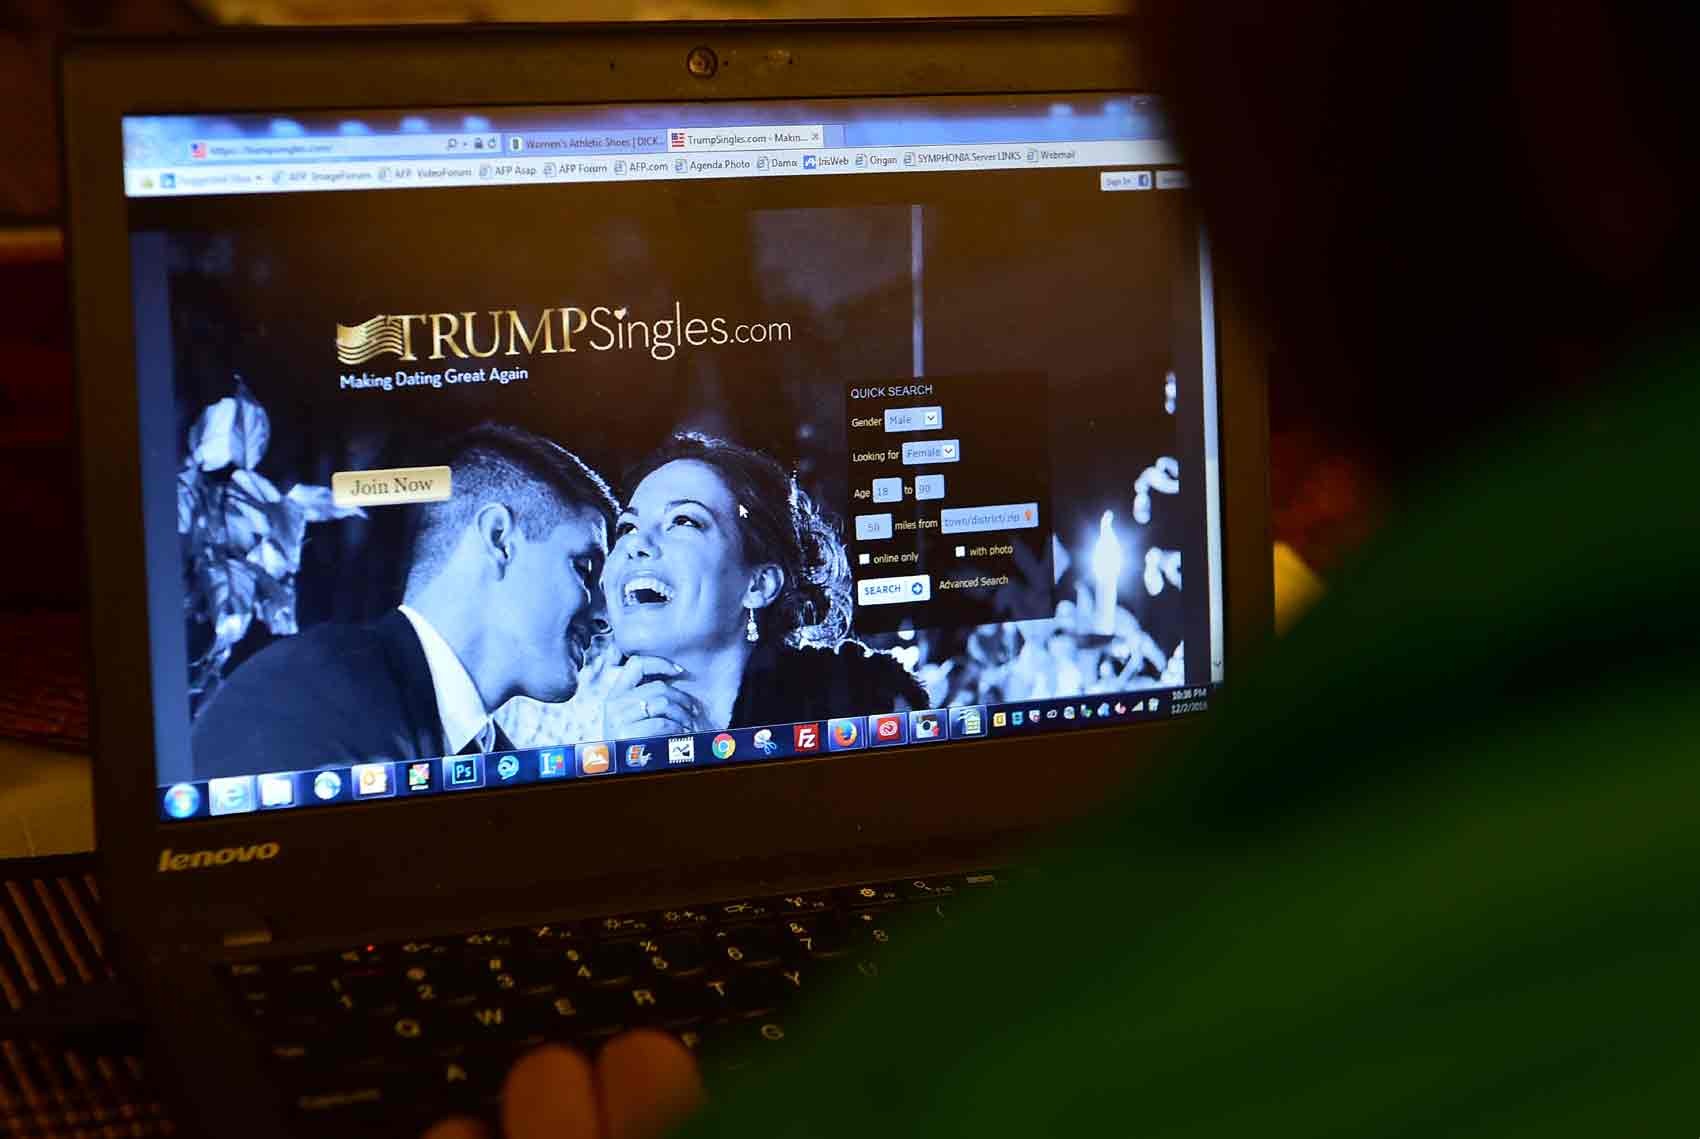 Site de paquera americano reúne apenas solteiros pró-Trump - Globo.com